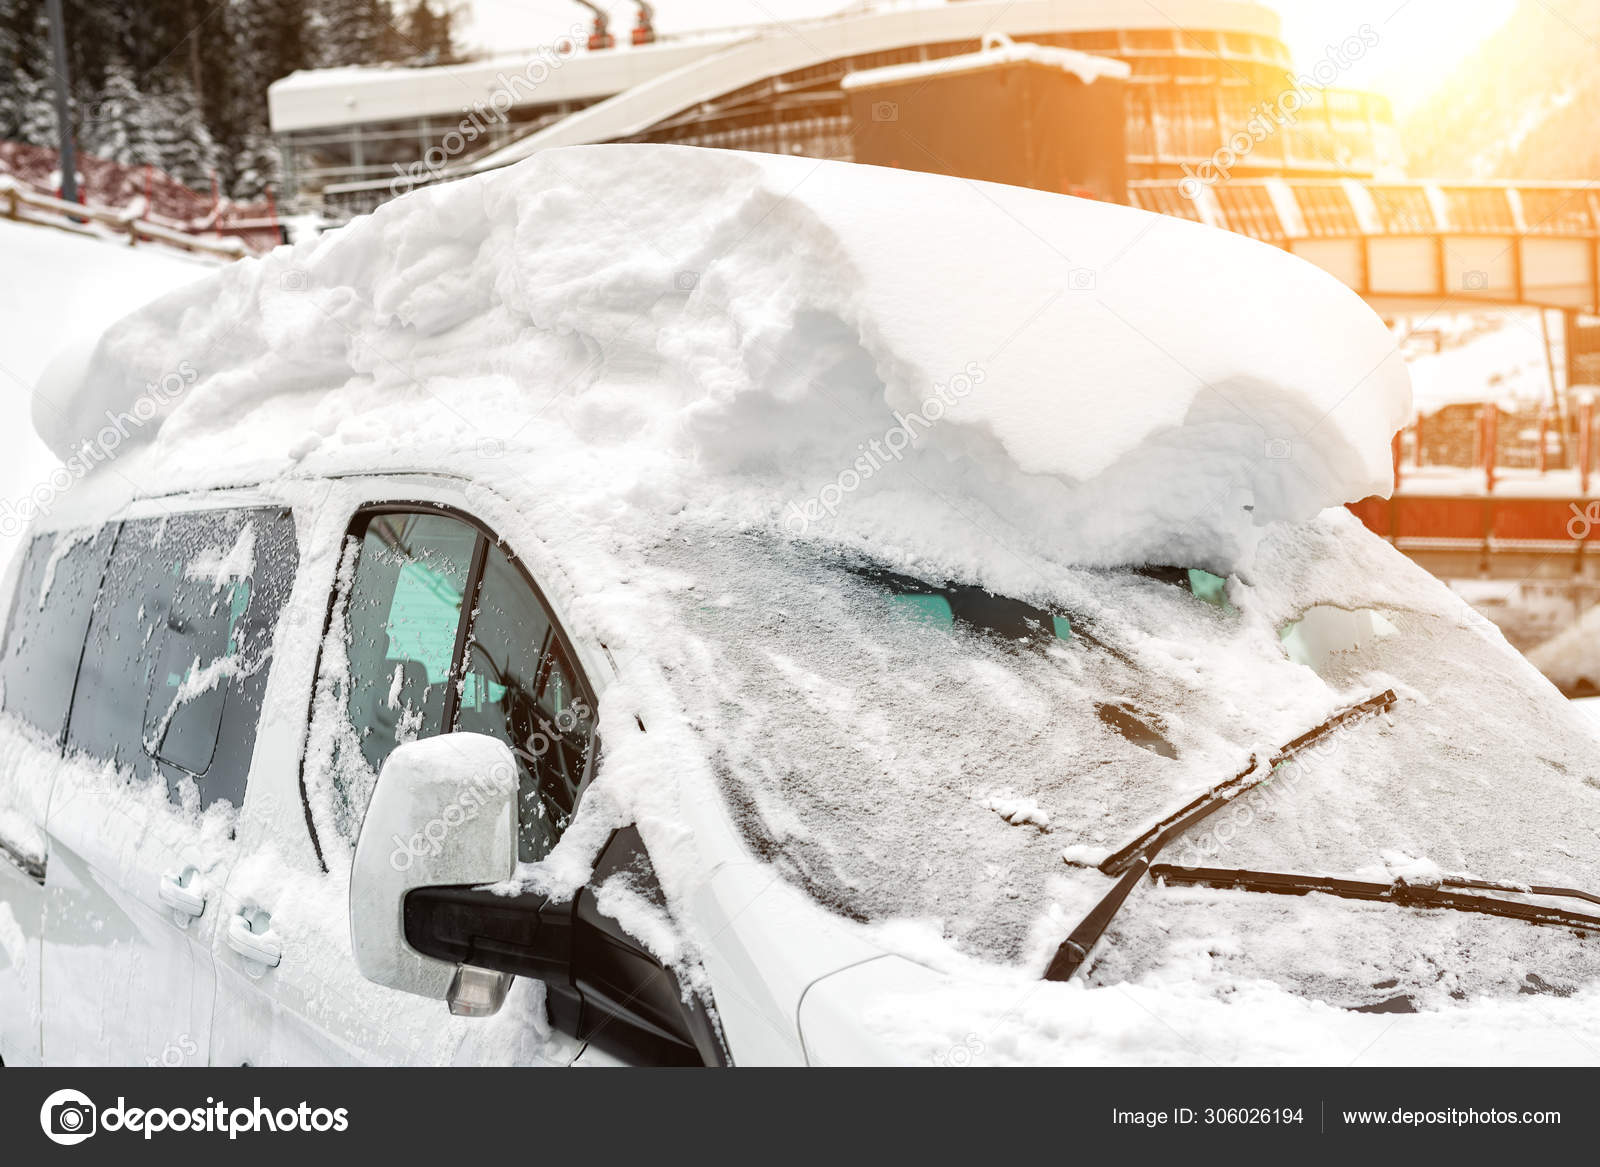 Auto auf einer Straße, die nach heftigen Schneefällen mit einer dicken  Schneedecke bedeckt war. Extreme Schneesturmfolgen. Fahrzeugscheibe mit  eingefrorener Scheibe und Scheibenwischer - Stockfotografie: lizenzfreie  Fotos © gorlovkv 306026194